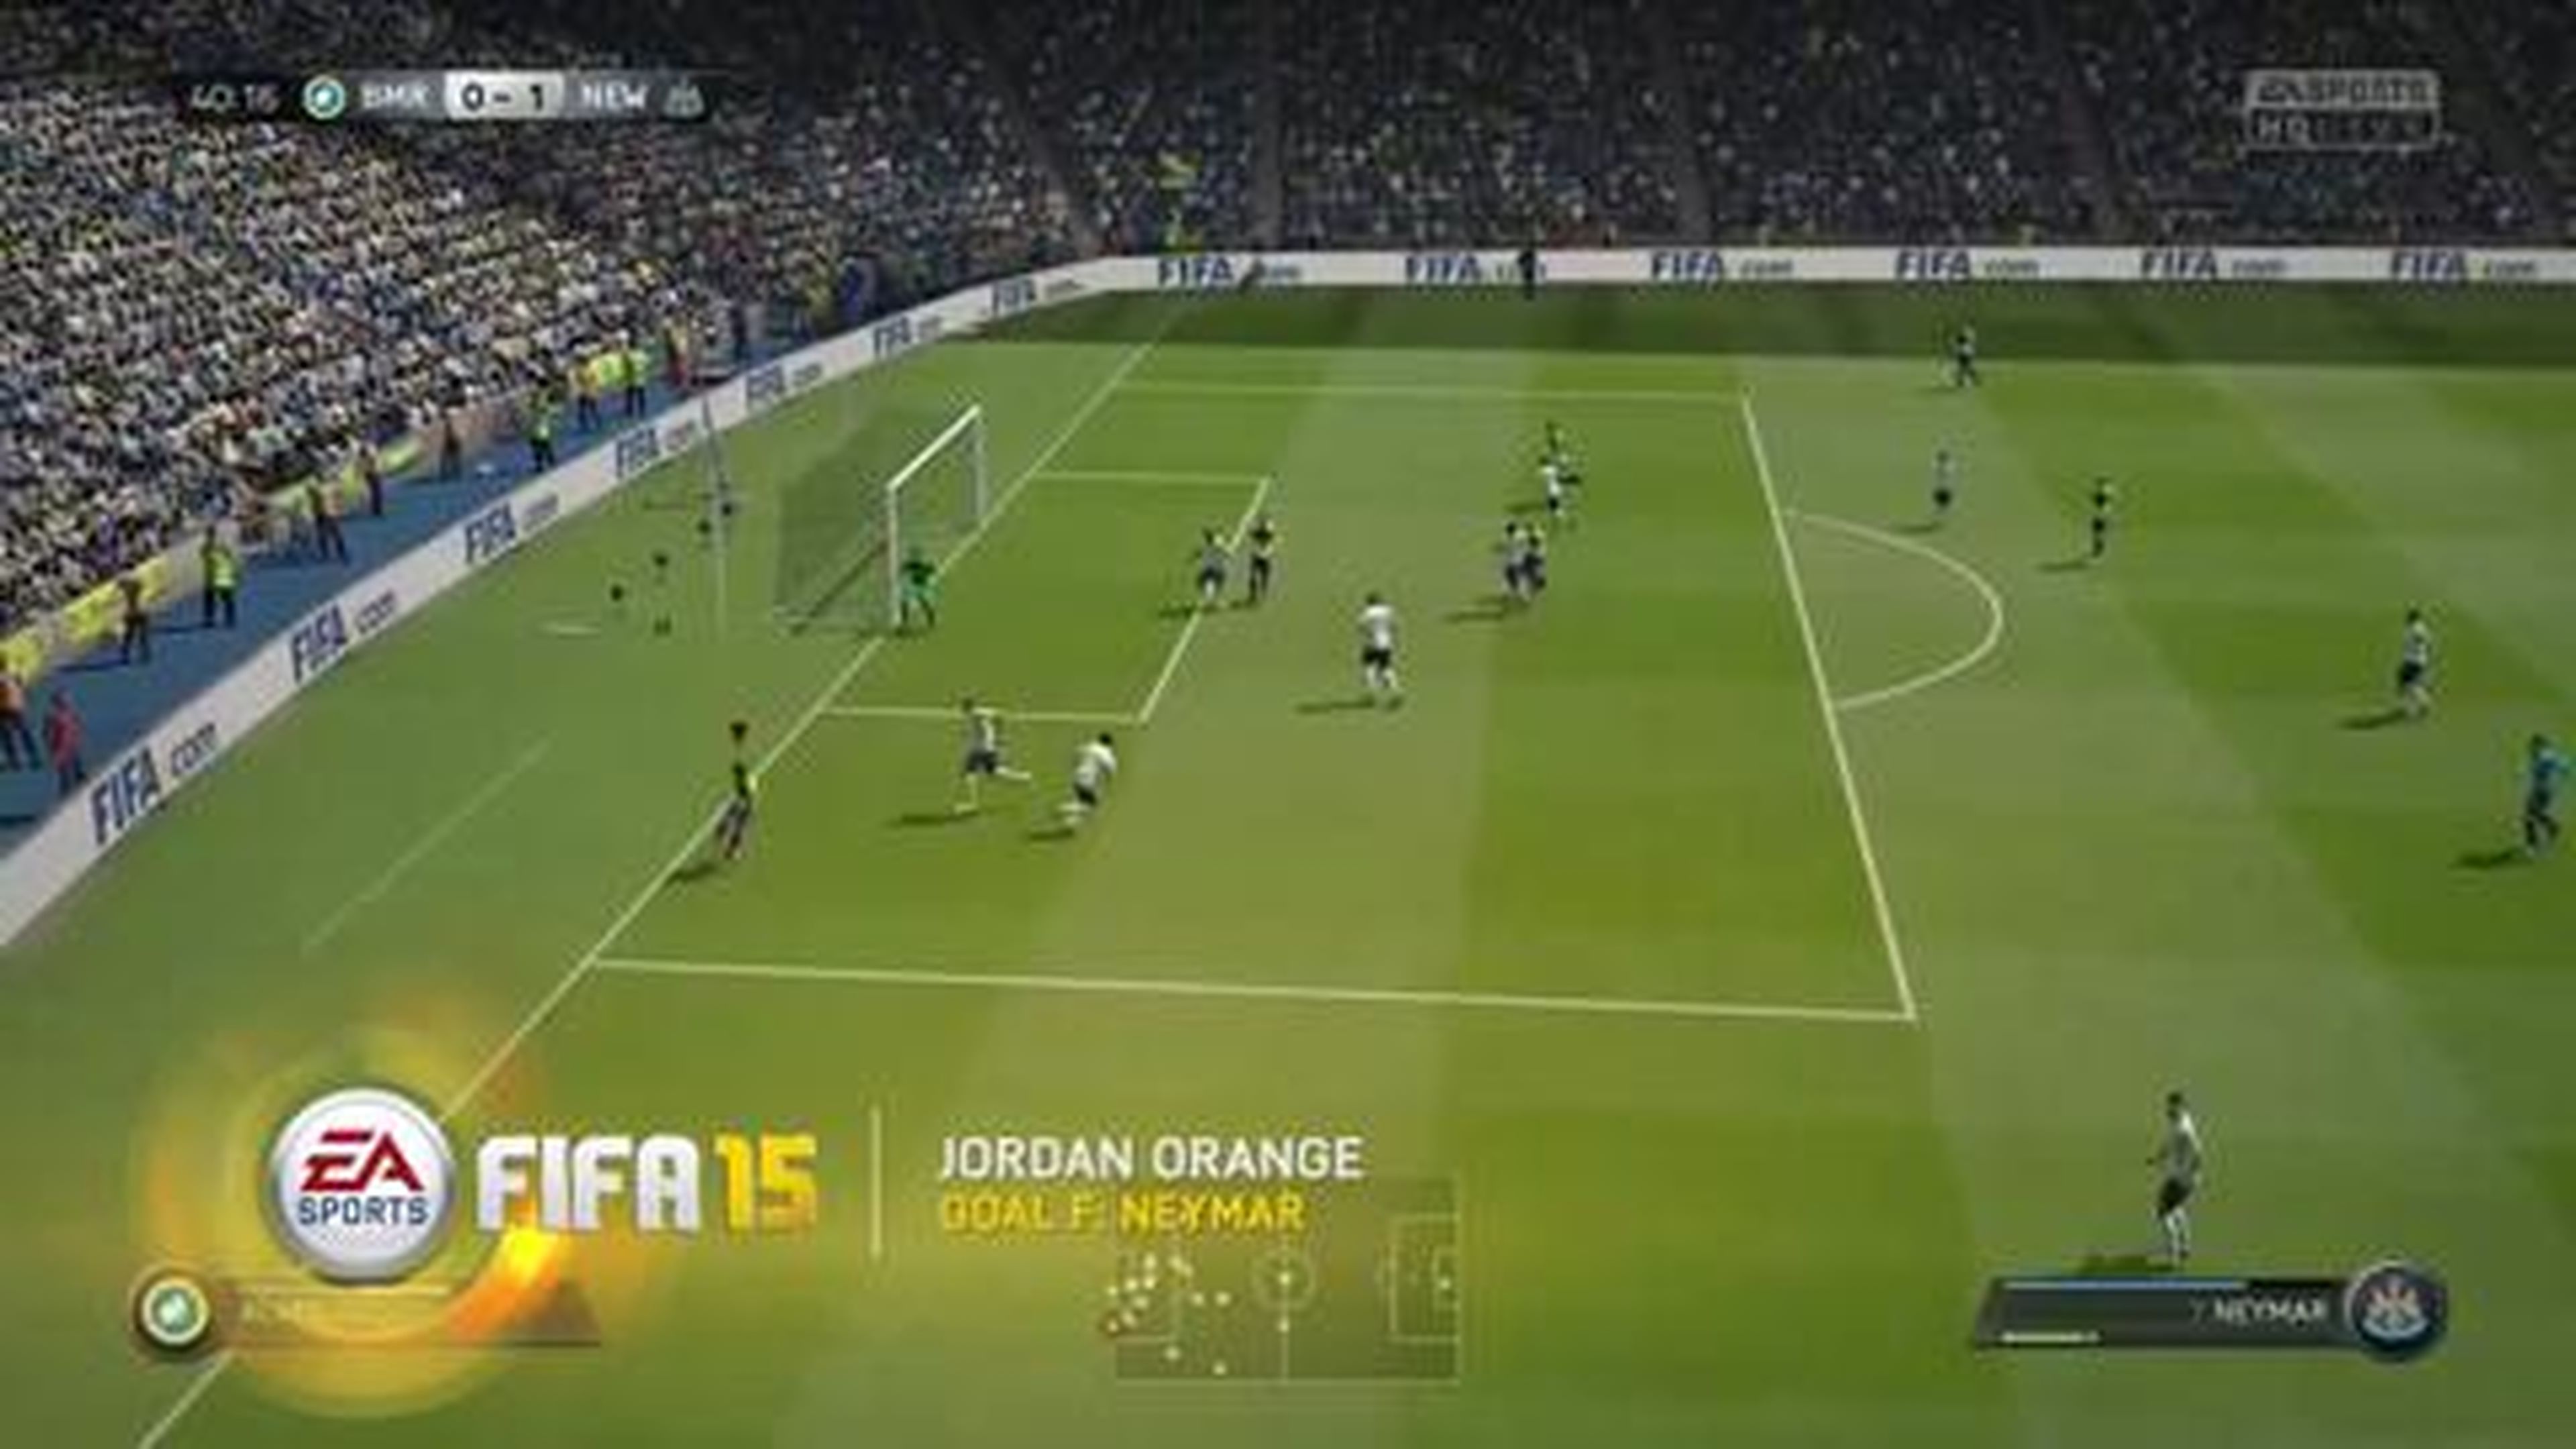 FIFA 15 - Best Goals of the Week - Round 13